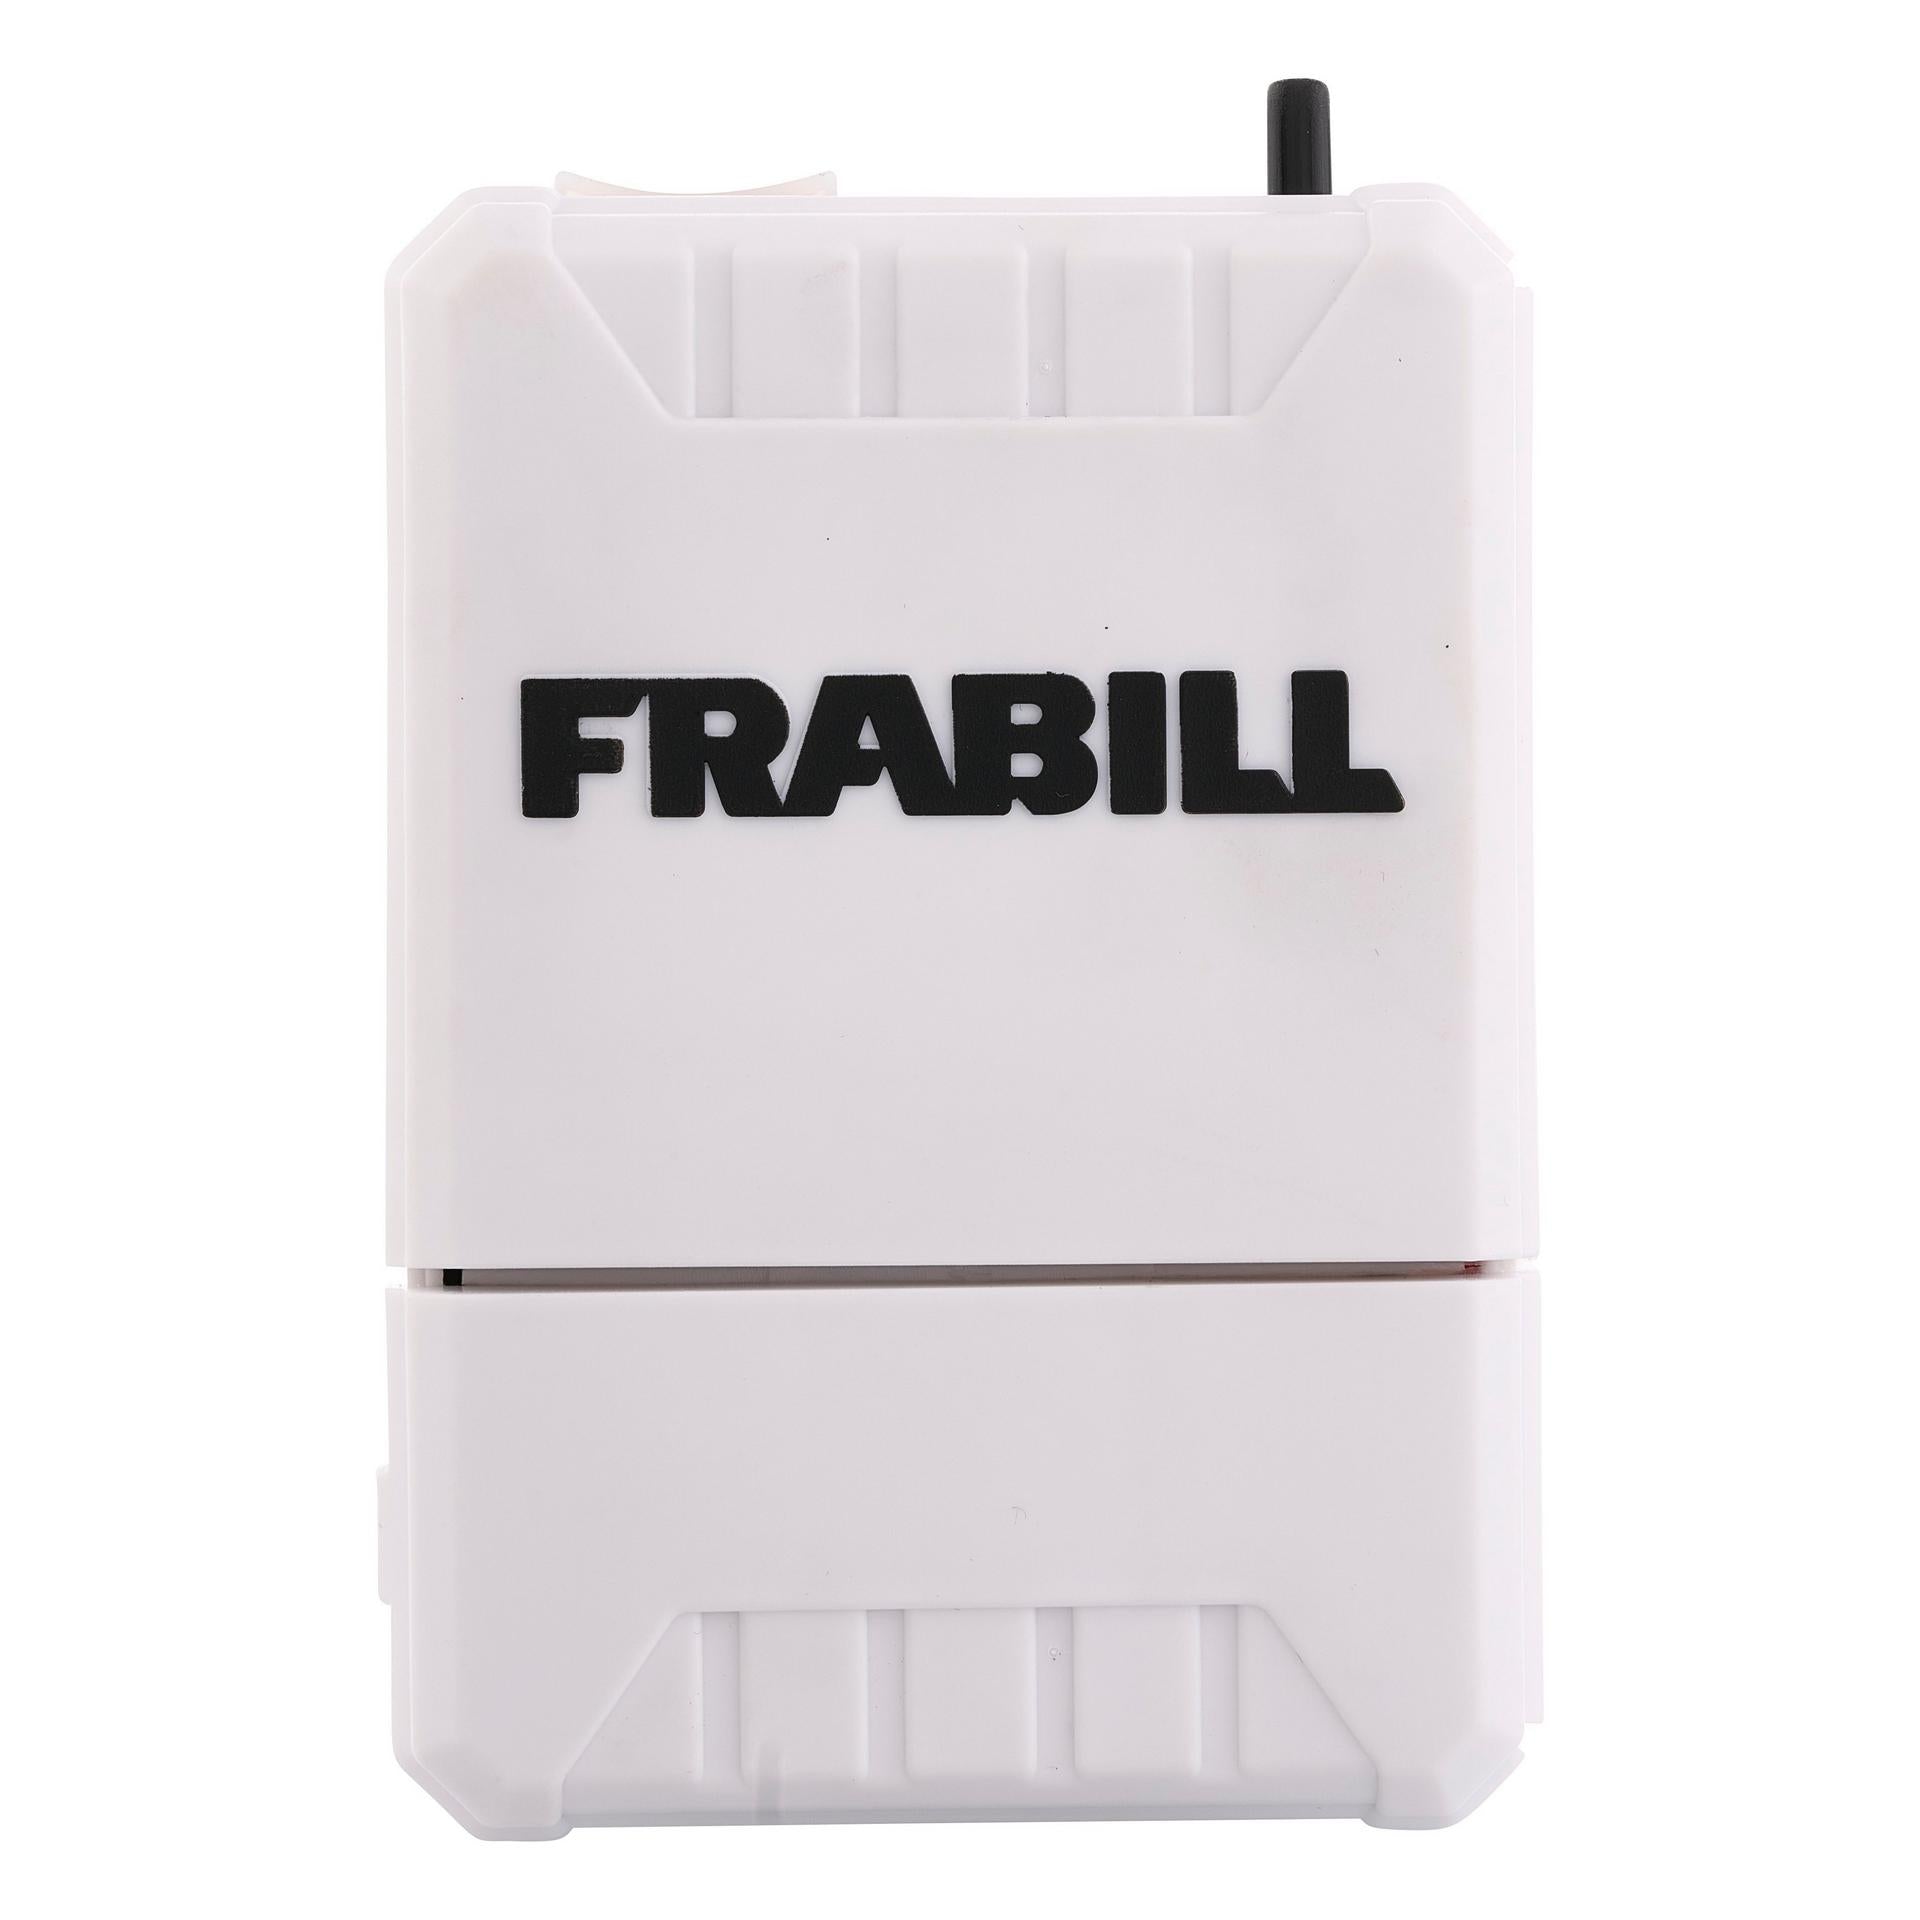 Live Bait Management  Frabill® – Frabill Fishing